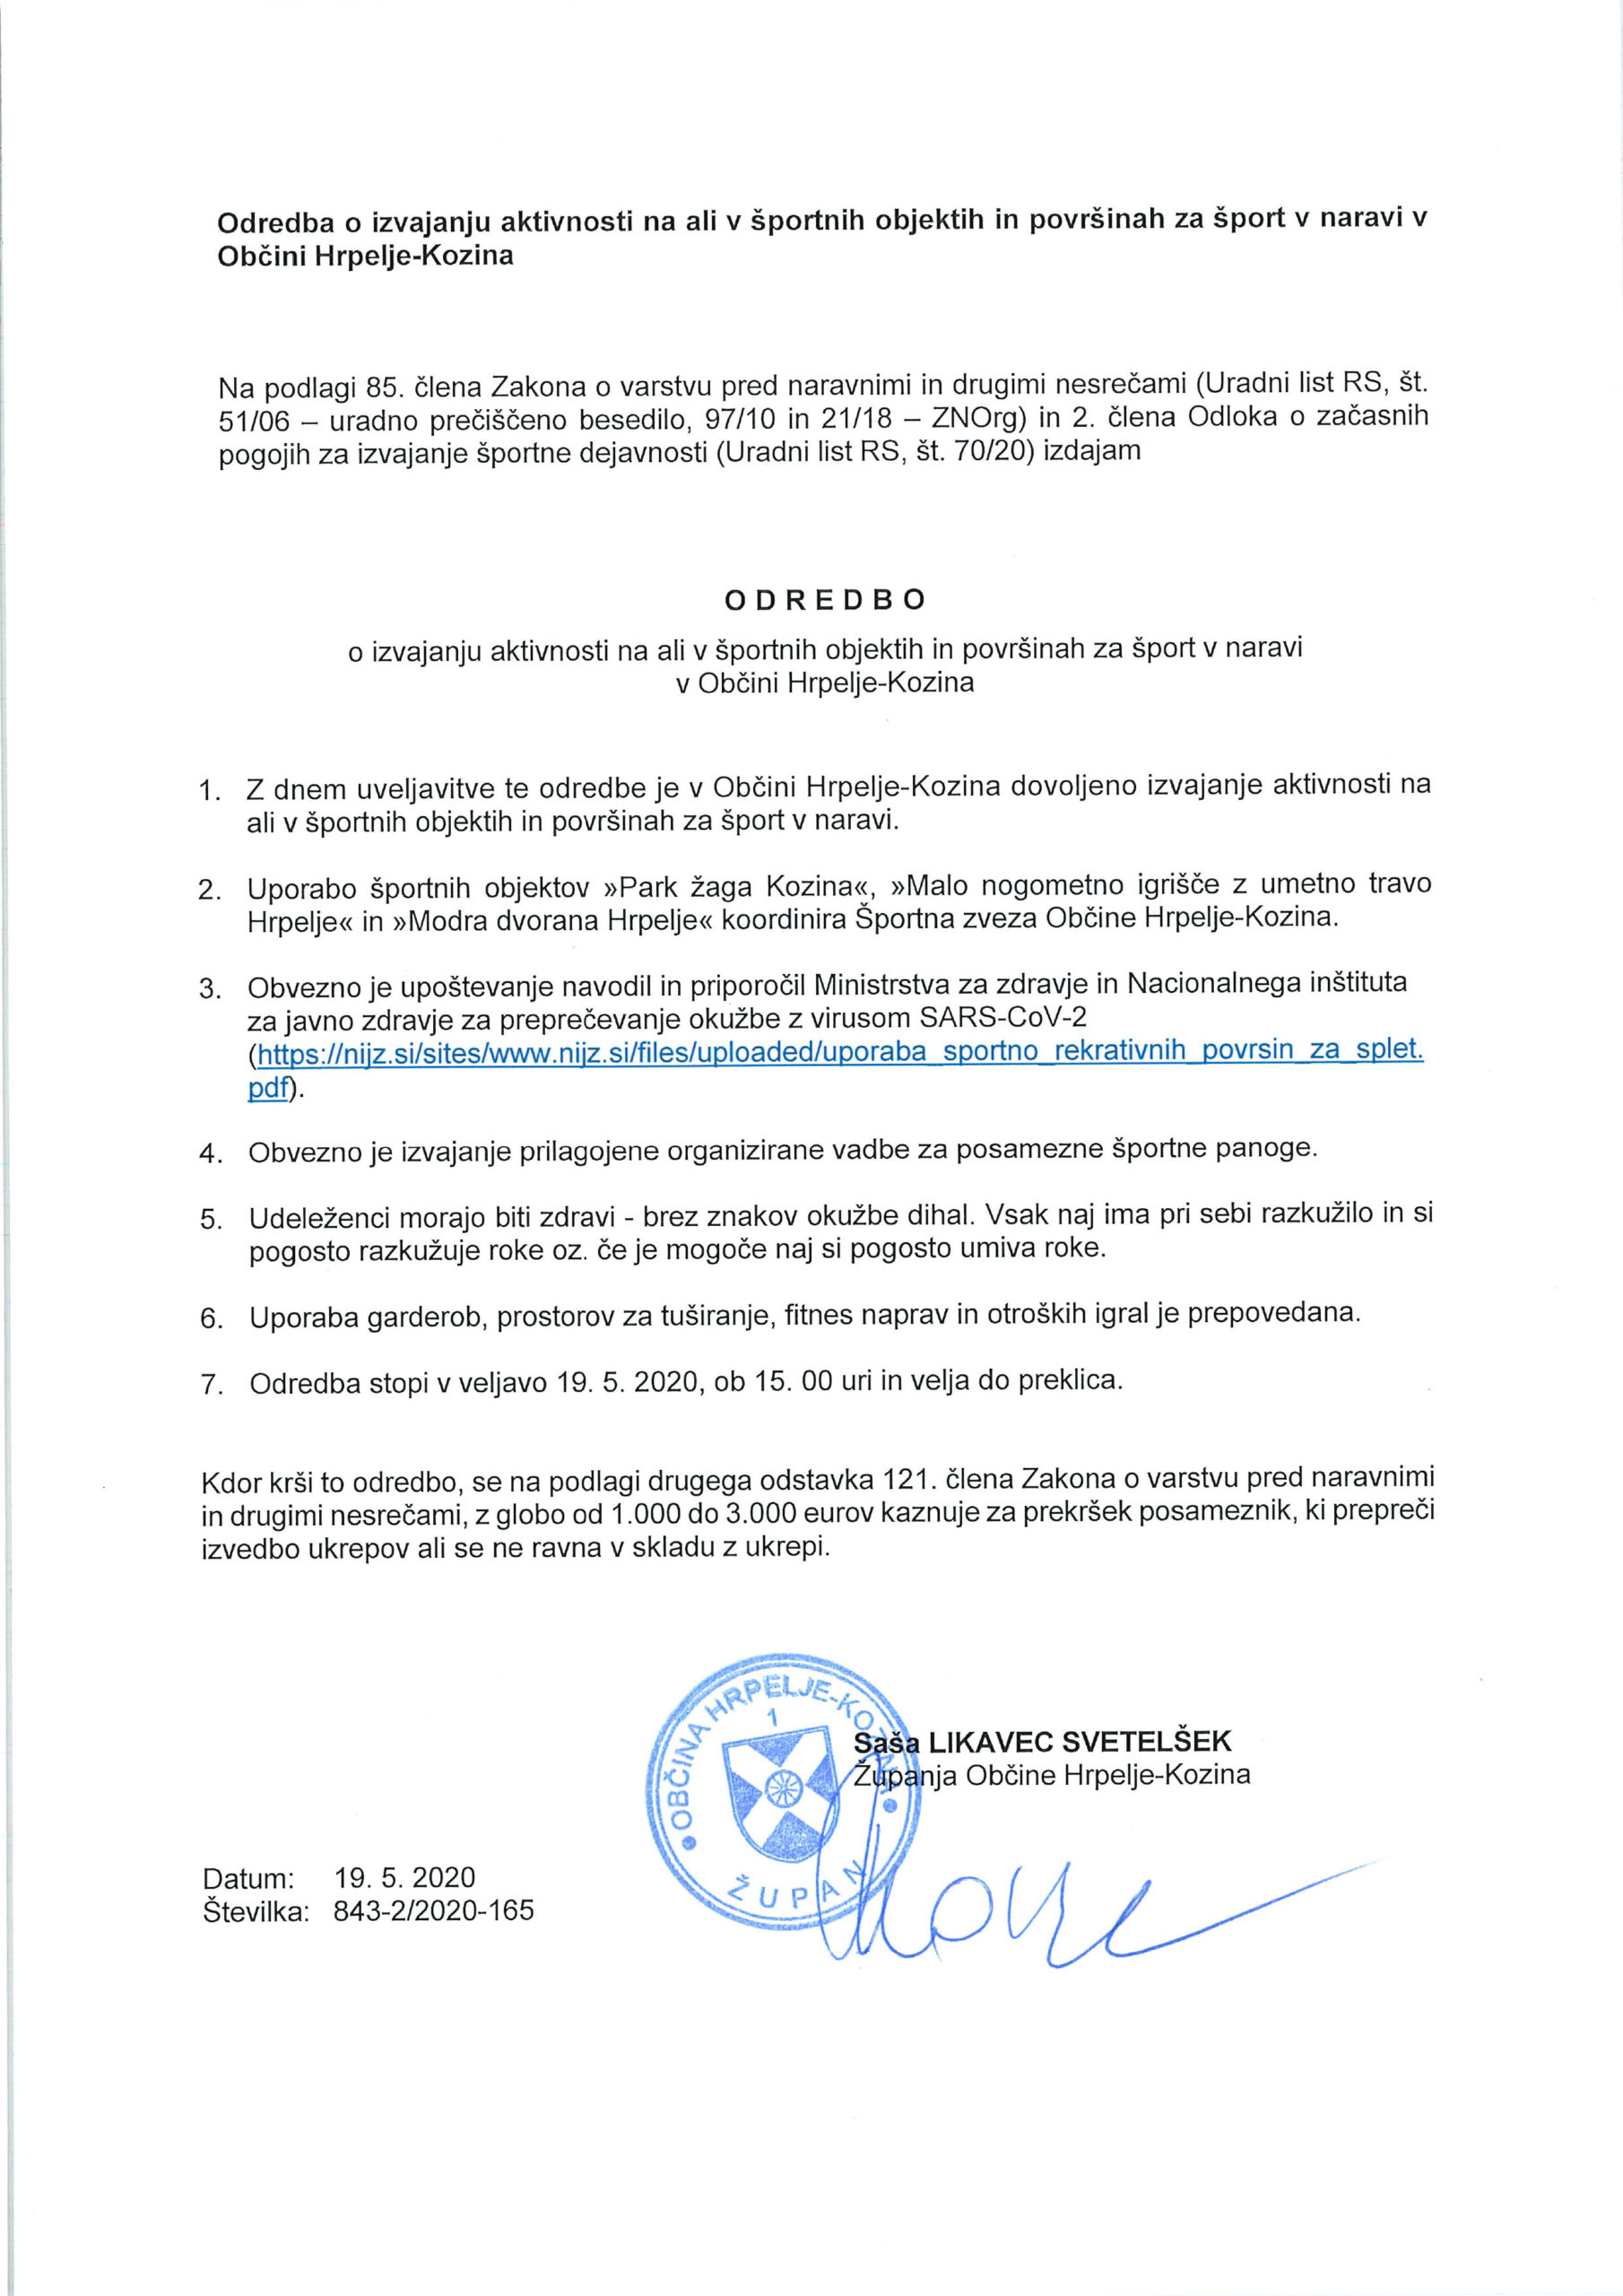 Odredba o izvajanju aktivnosti na ali v športnih objektih in površinah za šport v naravi v Občini Hrpelje-Kozina